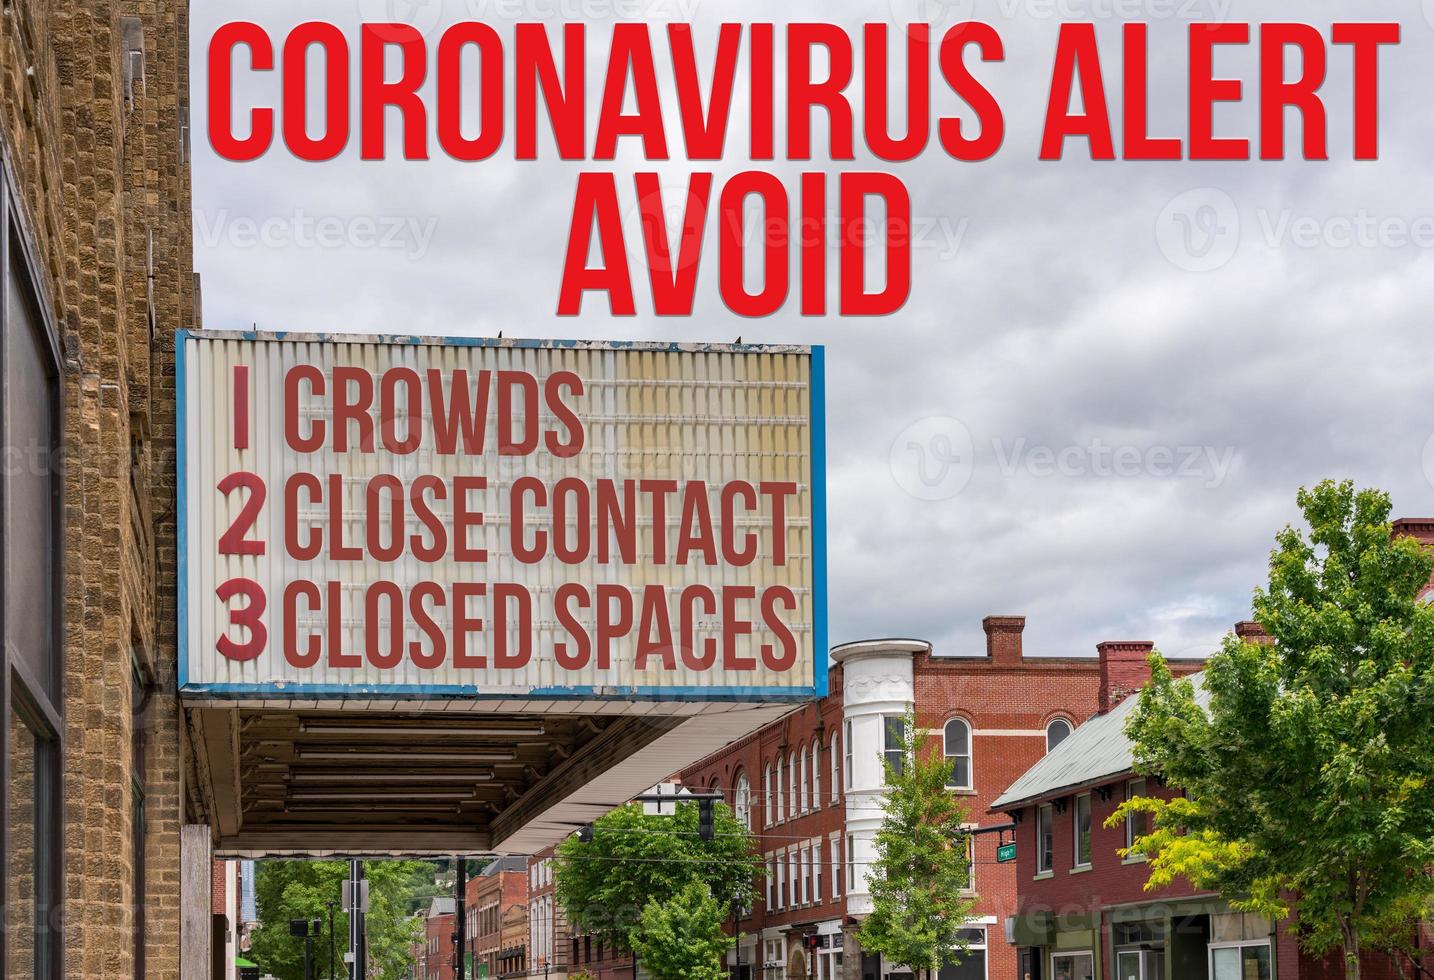 cartellone per cinema con evitare l'epidemia di coronavirus o covid-19 evitando la folla, i contatti ravvicinati e gli spazi chiusi foto